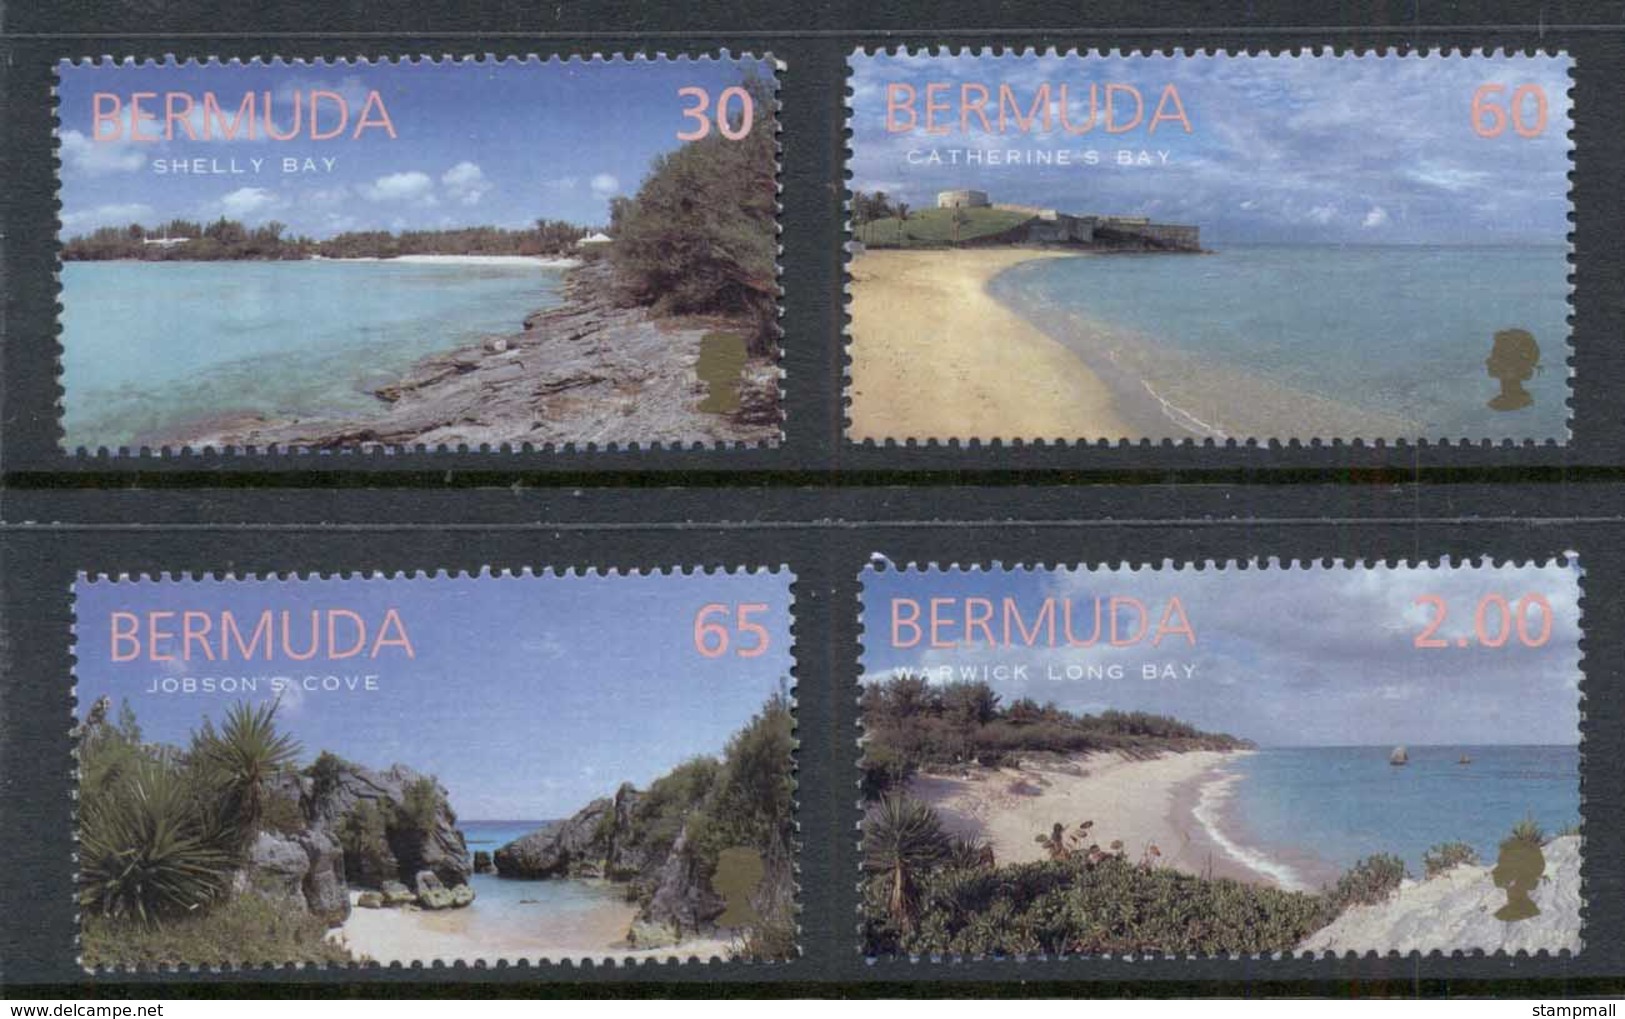 Bermuda 1999 Views, Beaches MUH - Bermuda